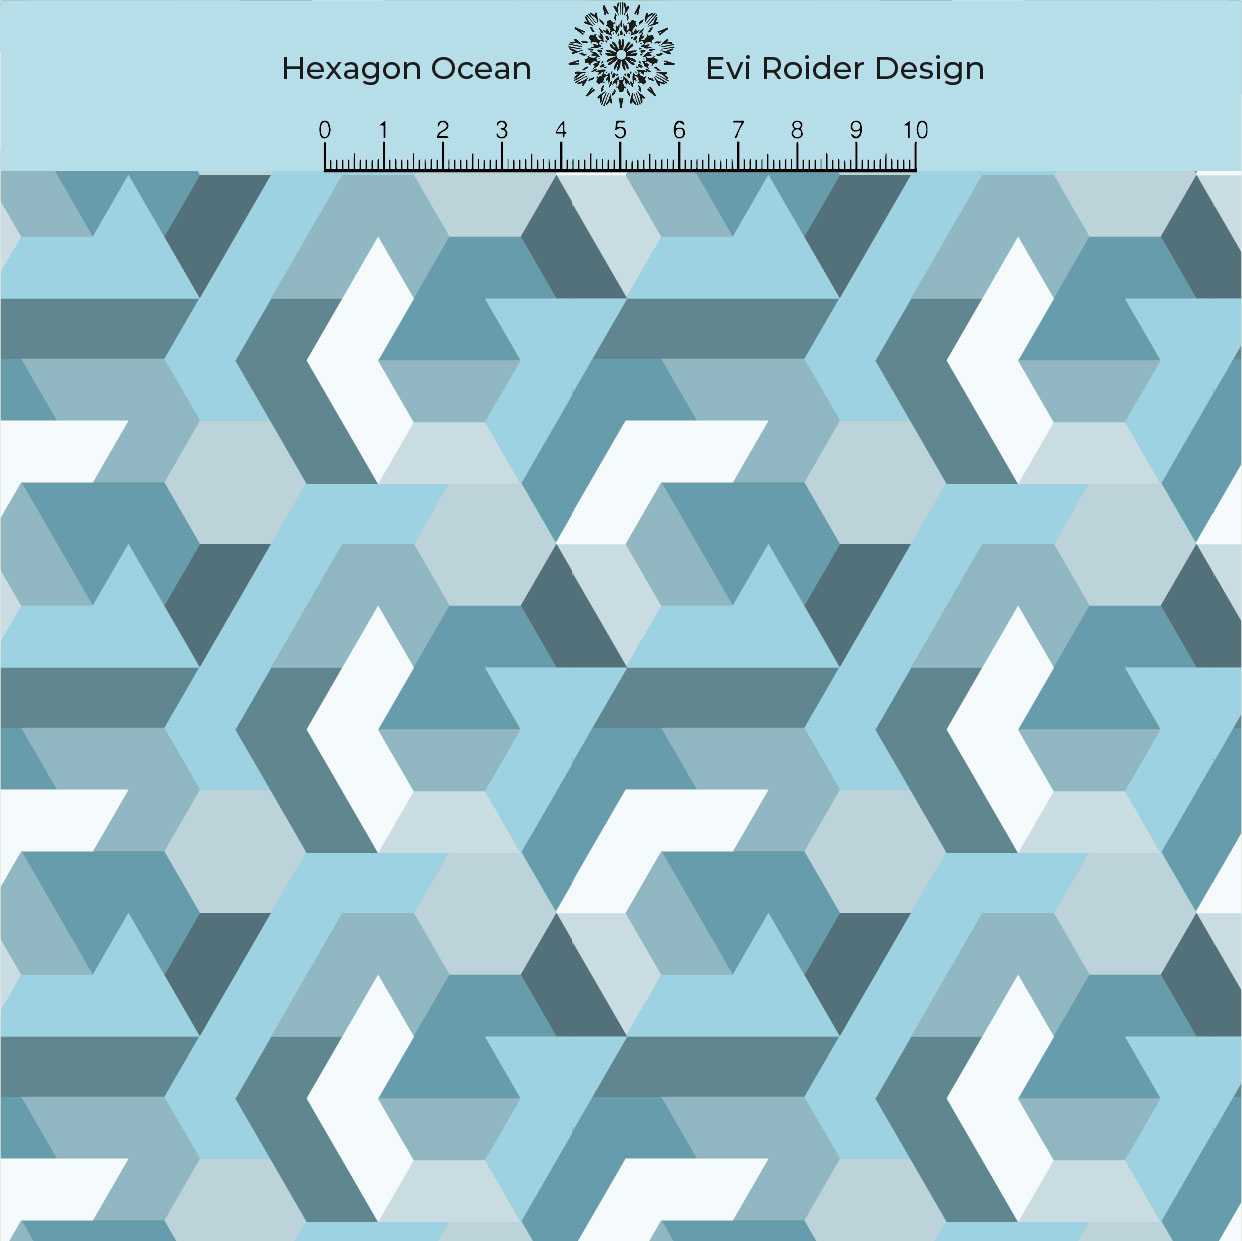 Hexagon Ocean